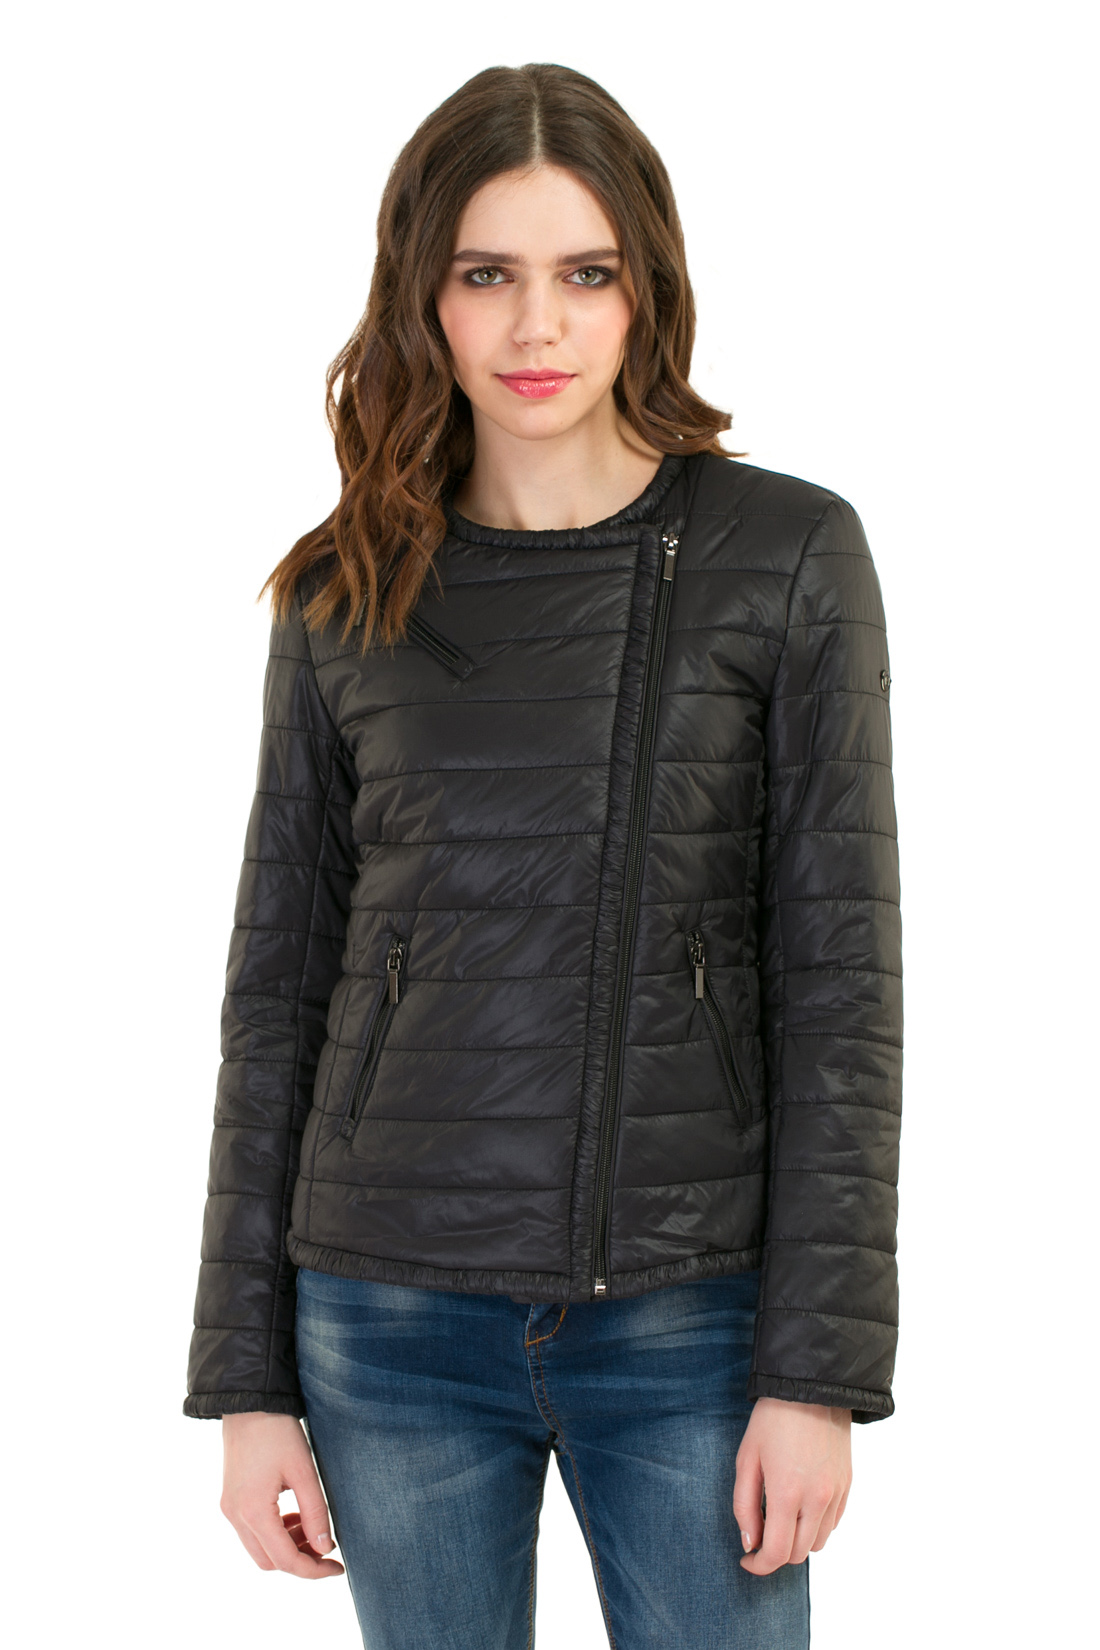 Утеплённая куртка-косуха (арт. baon B037038), размер XXL, цвет черный Утеплённая куртка-косуха (арт. baon B037038) - фото 1